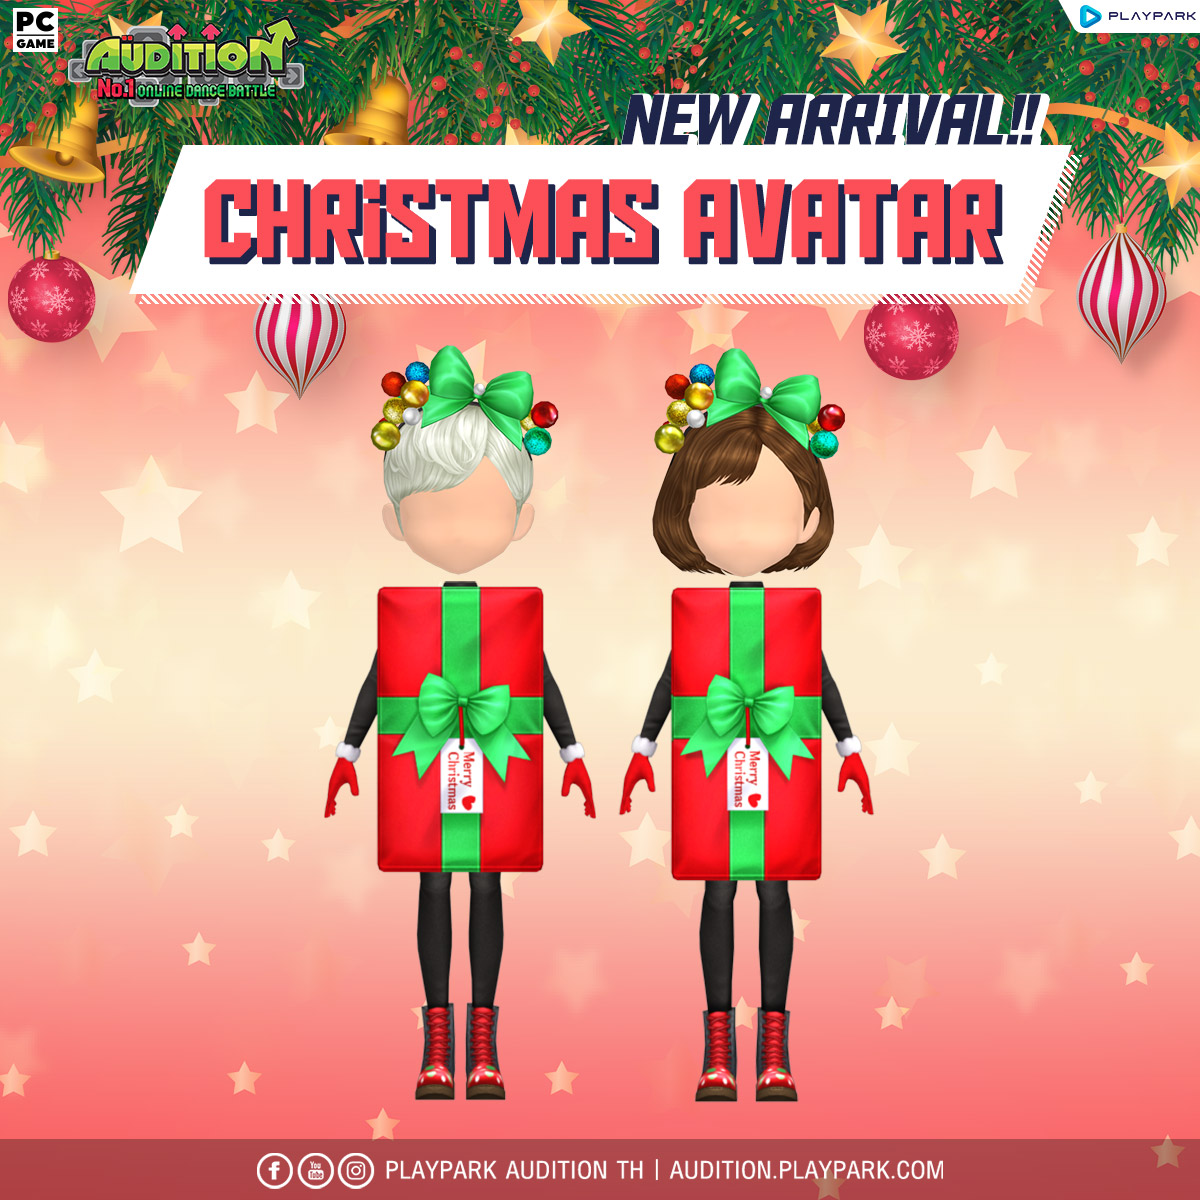 20 ธันวาคมนี้ Update เพลงใหม่, Ride Unicorn, Christmas Avatar และไอเทมใหม่!!  